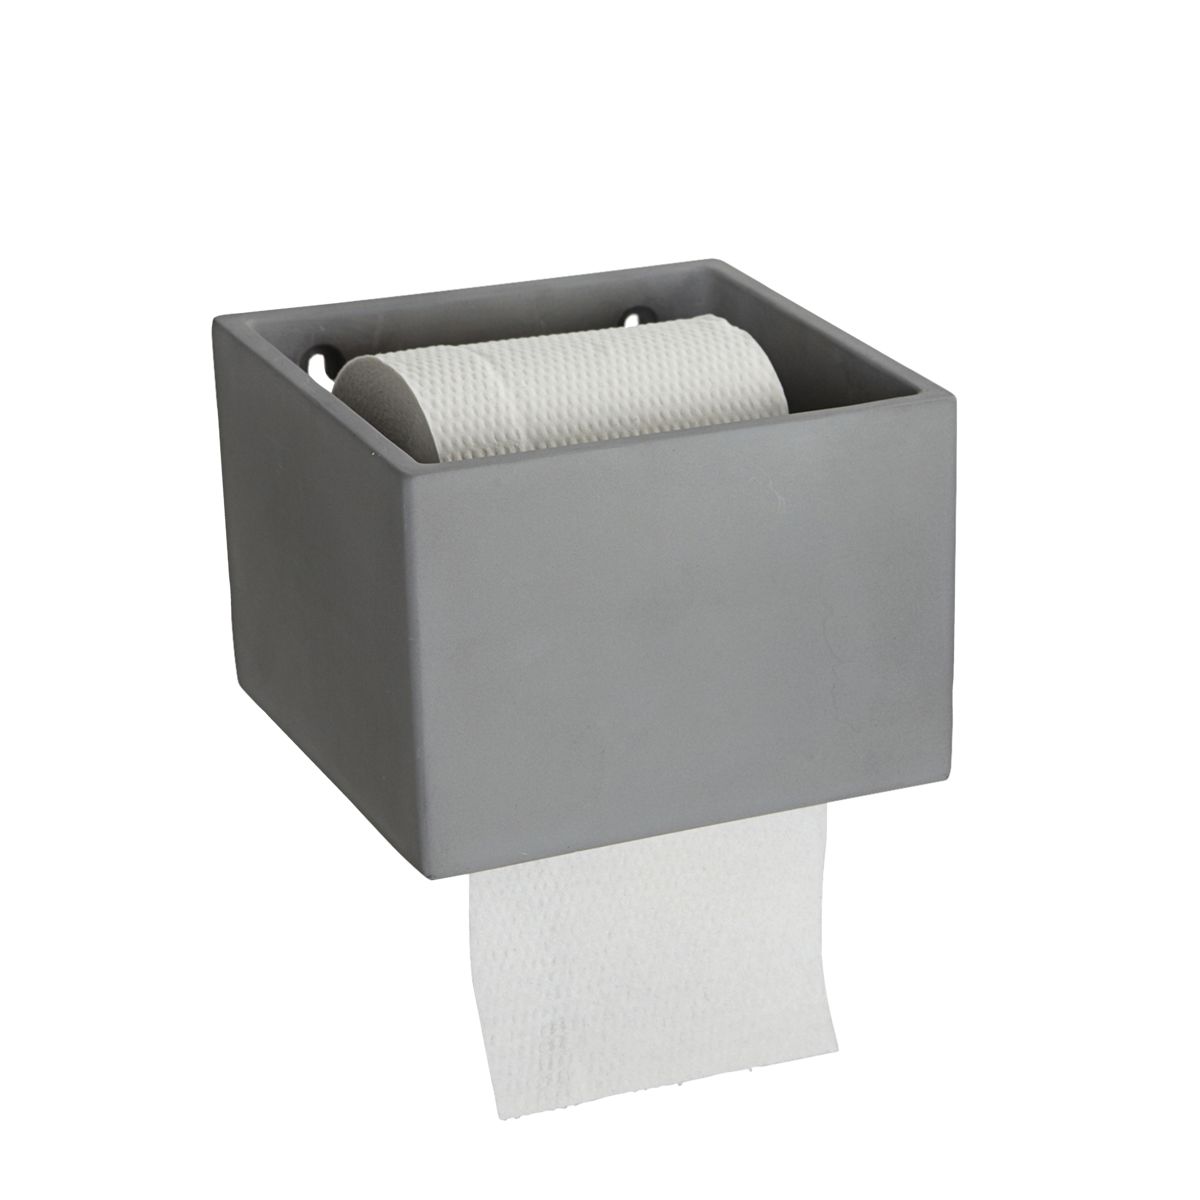 Billede af Toiletpapirholder, Cement hos ModernHouse.dk